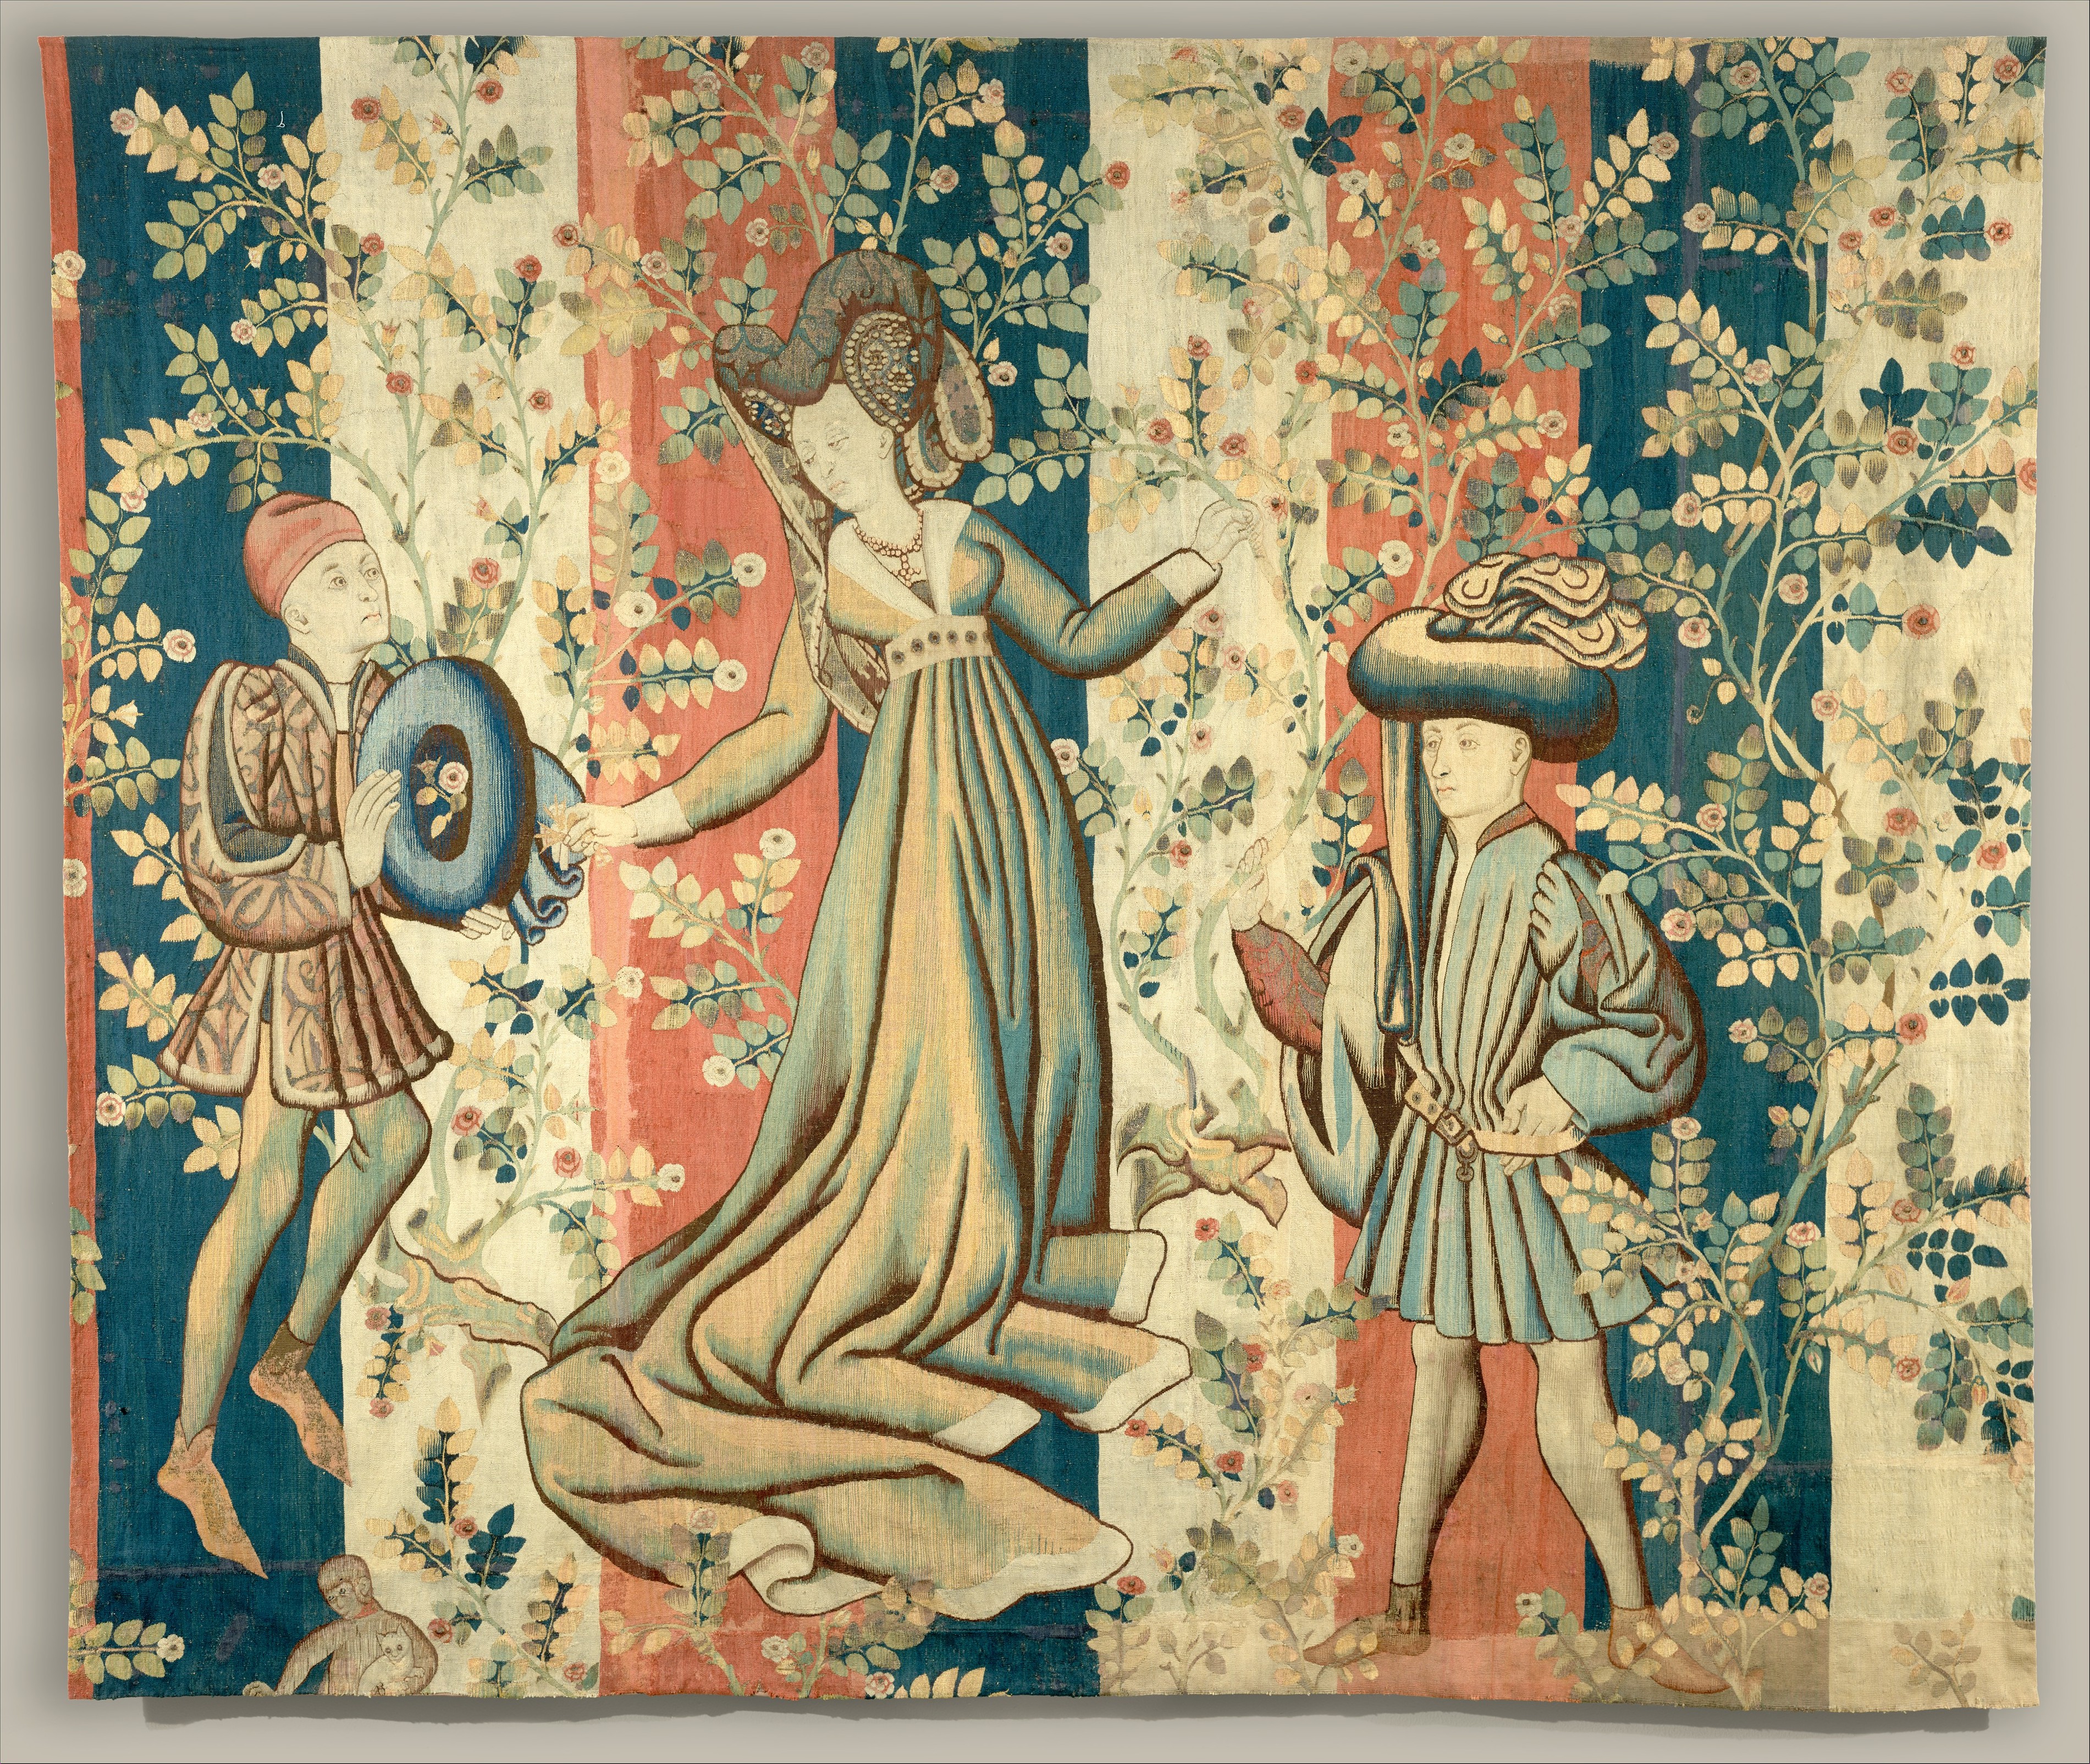 Cortesãos num Jardim de Rosas: Uma Dama e Dois Cavalheiros by Artista Desconhecido - cerca de 1440-50 - 288,9 x 325,1 cm 